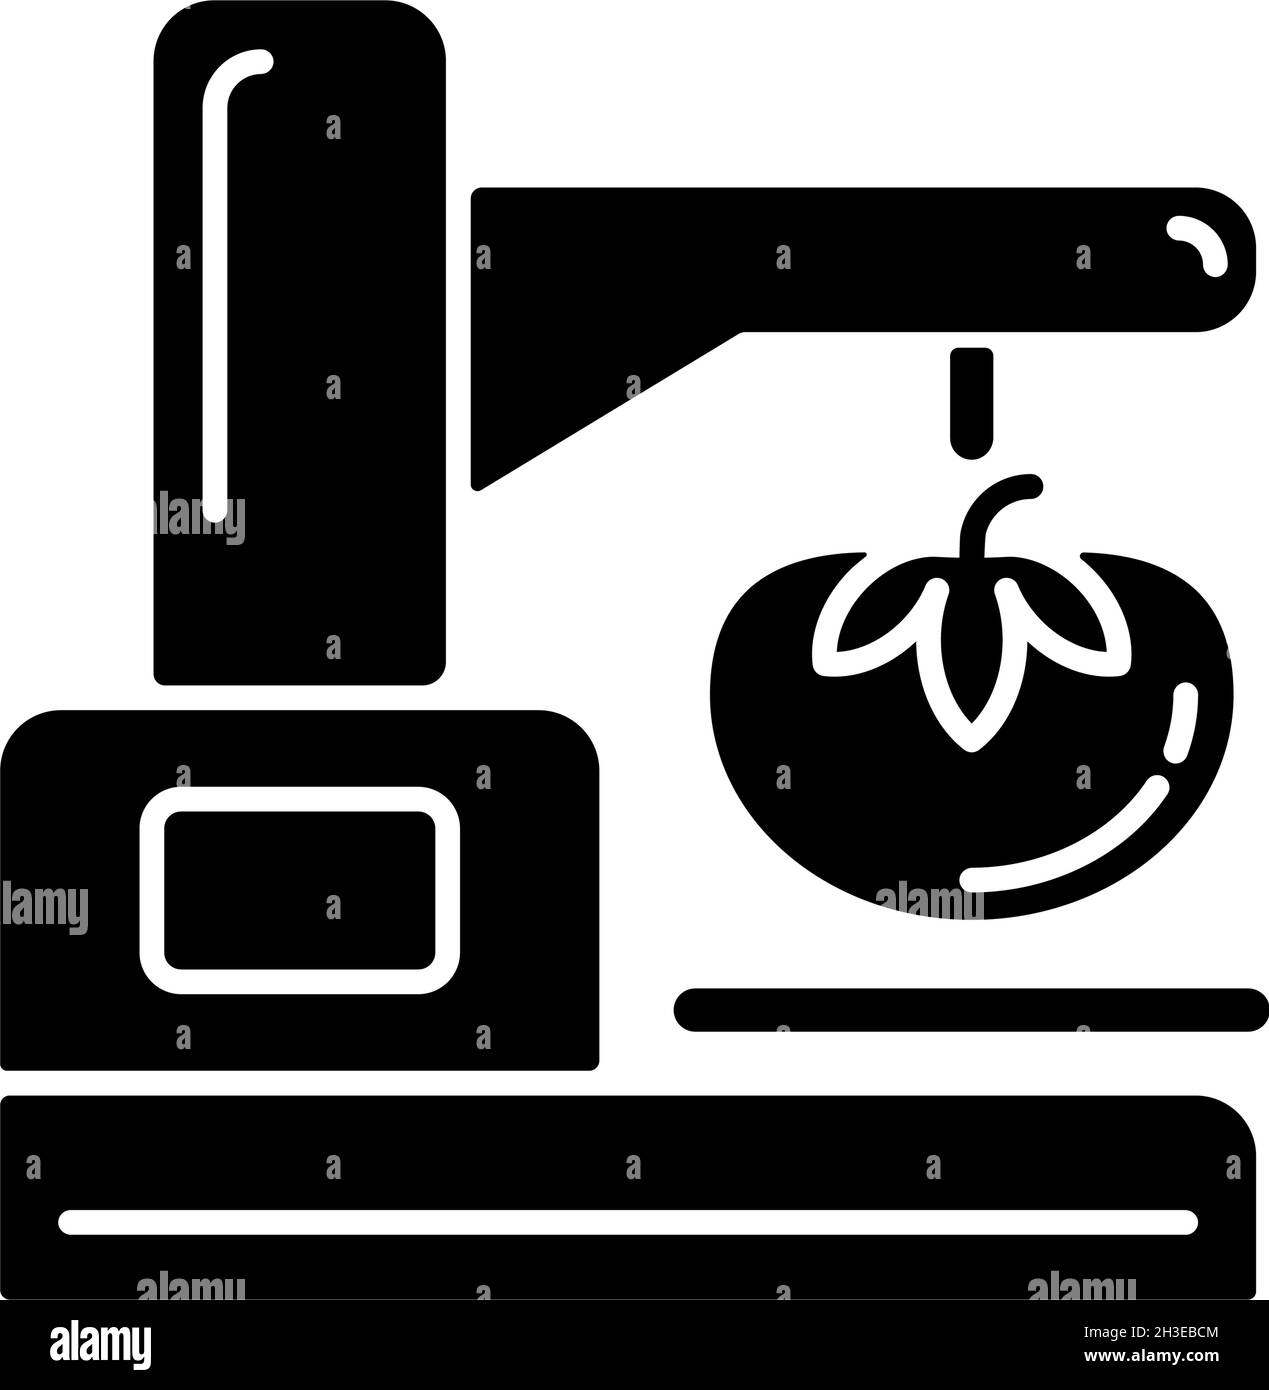 Icona glifo nero dell'analizzatore di consistenza alimentare Illustrazione Vettoriale